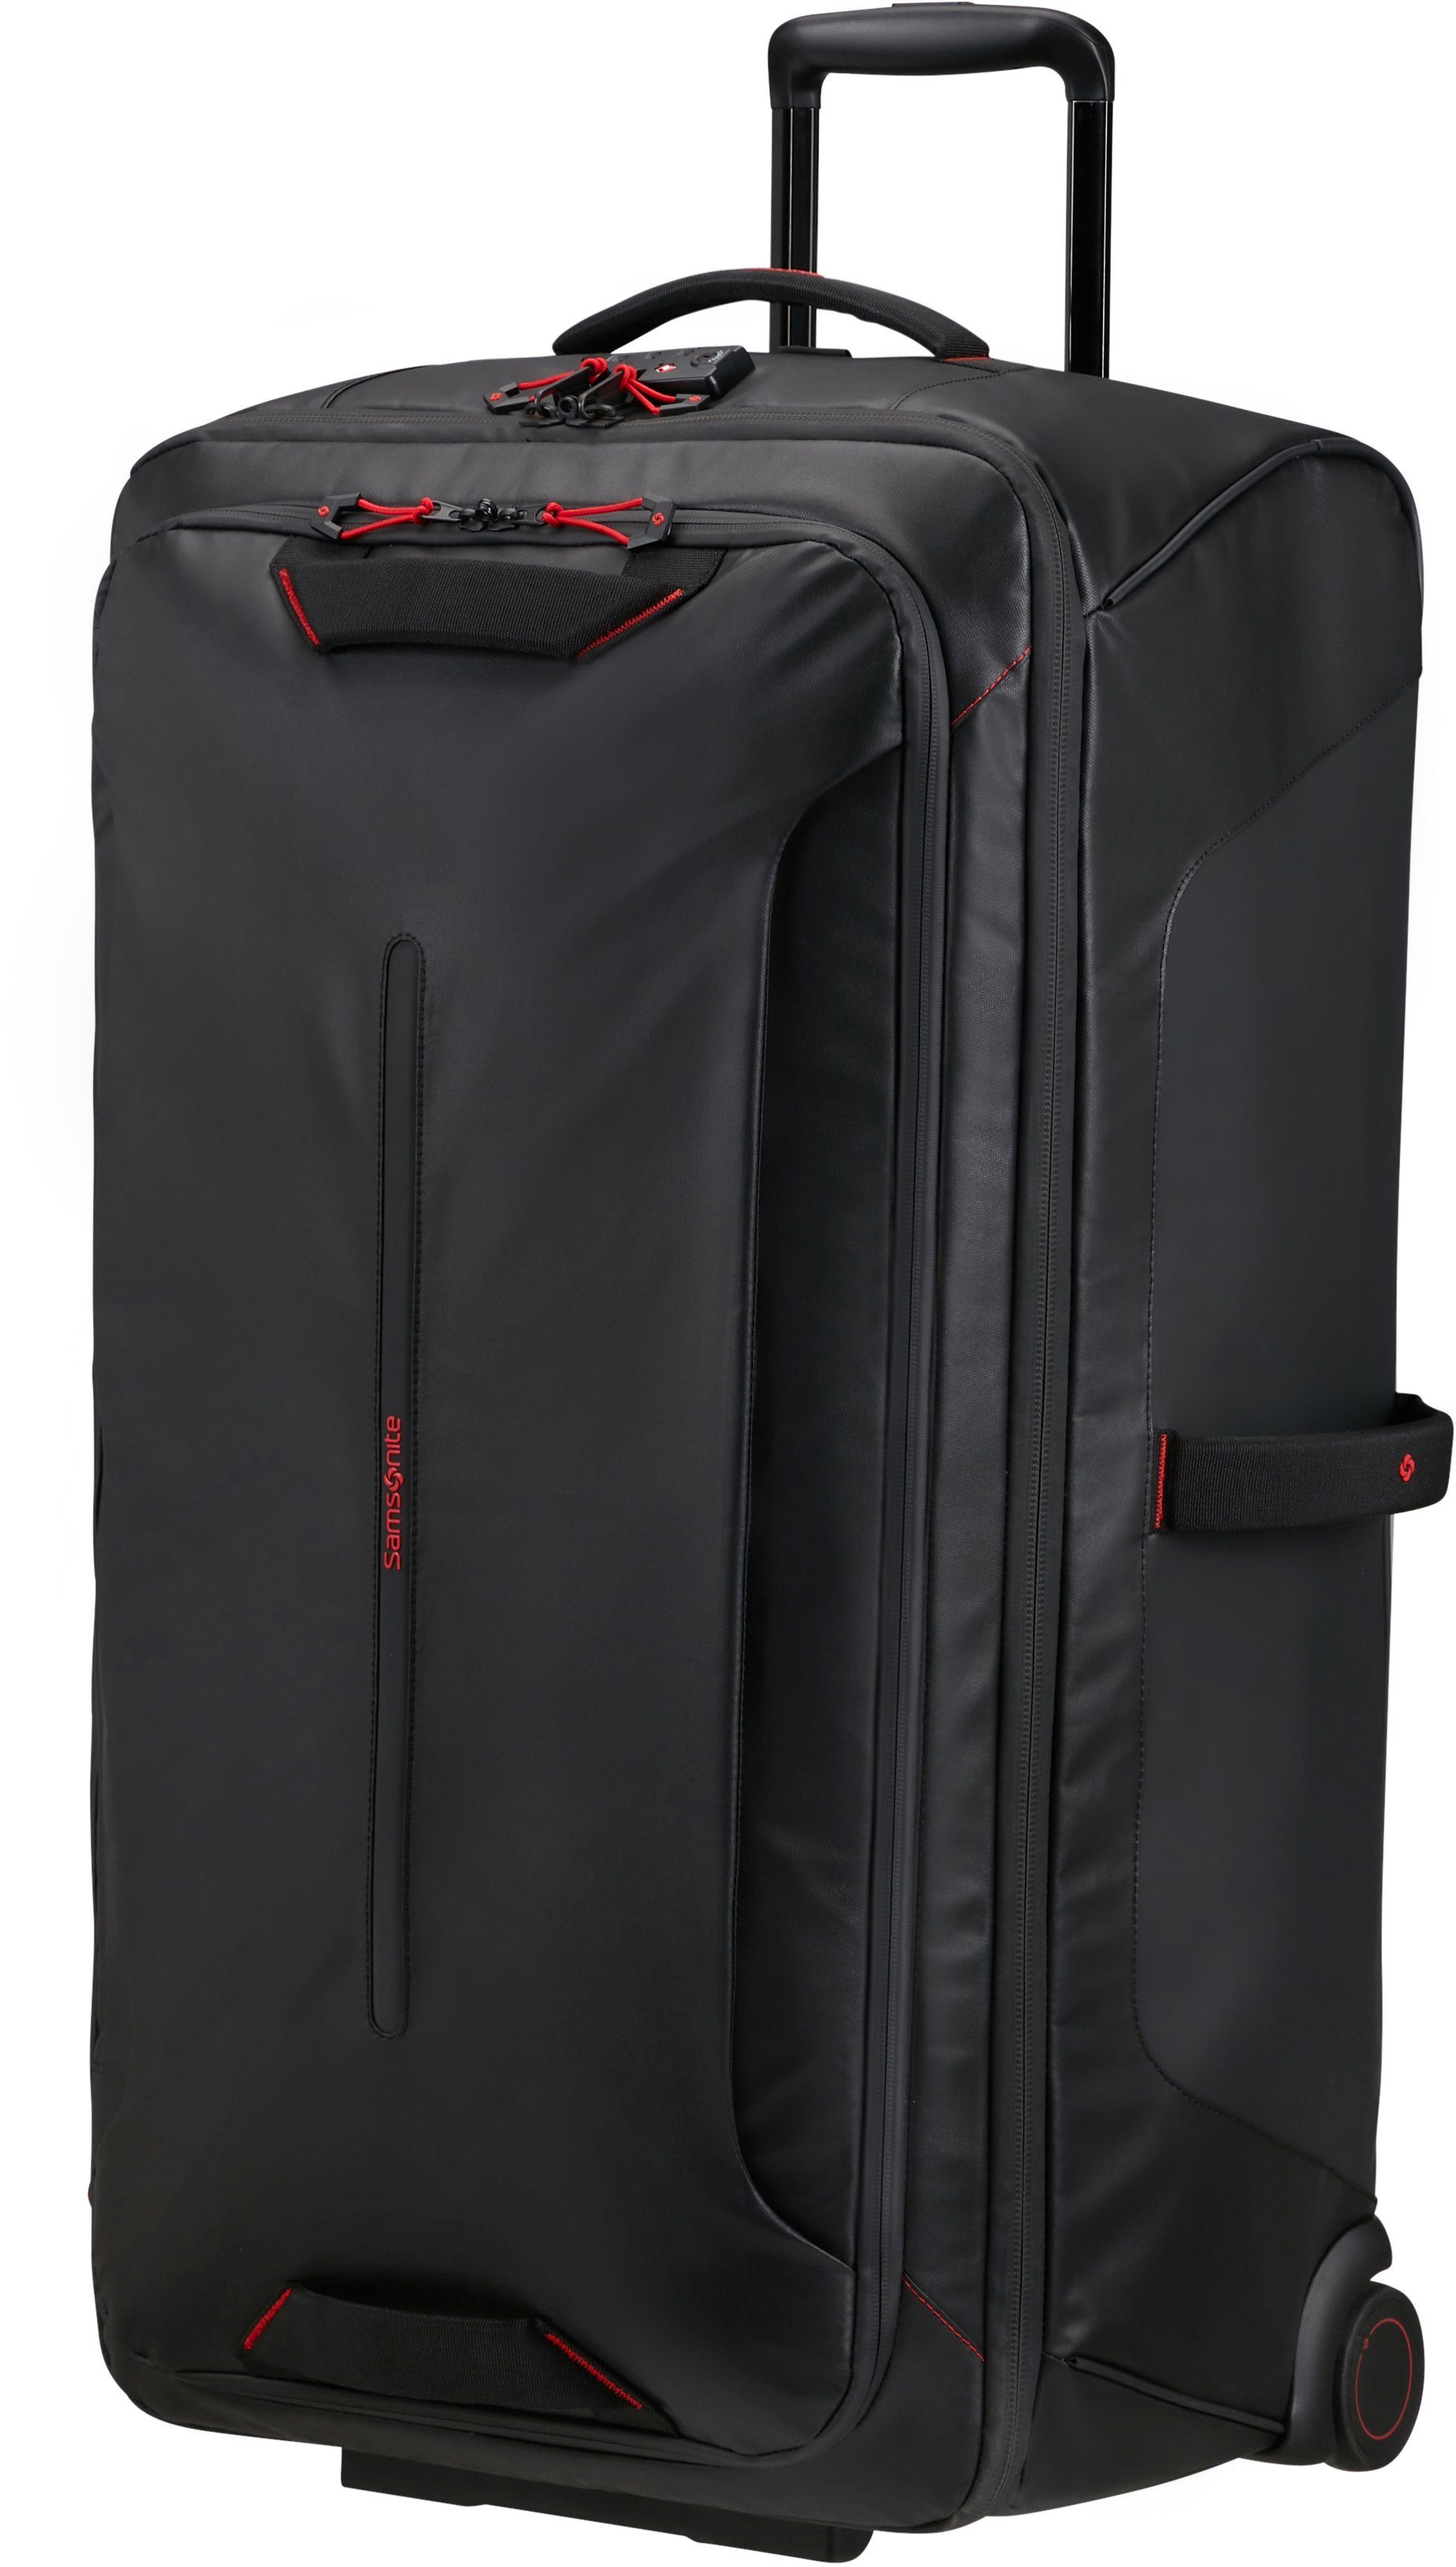 Samsonite Reisetasche Ecodiver, 79 cm, Black, mit Trolley- und  Rucksackfunktion; teilweise aus recyceltem Material, Weichgepäckkoffer » Ecodiver, Black« mit 2 Rollen und Standfuß